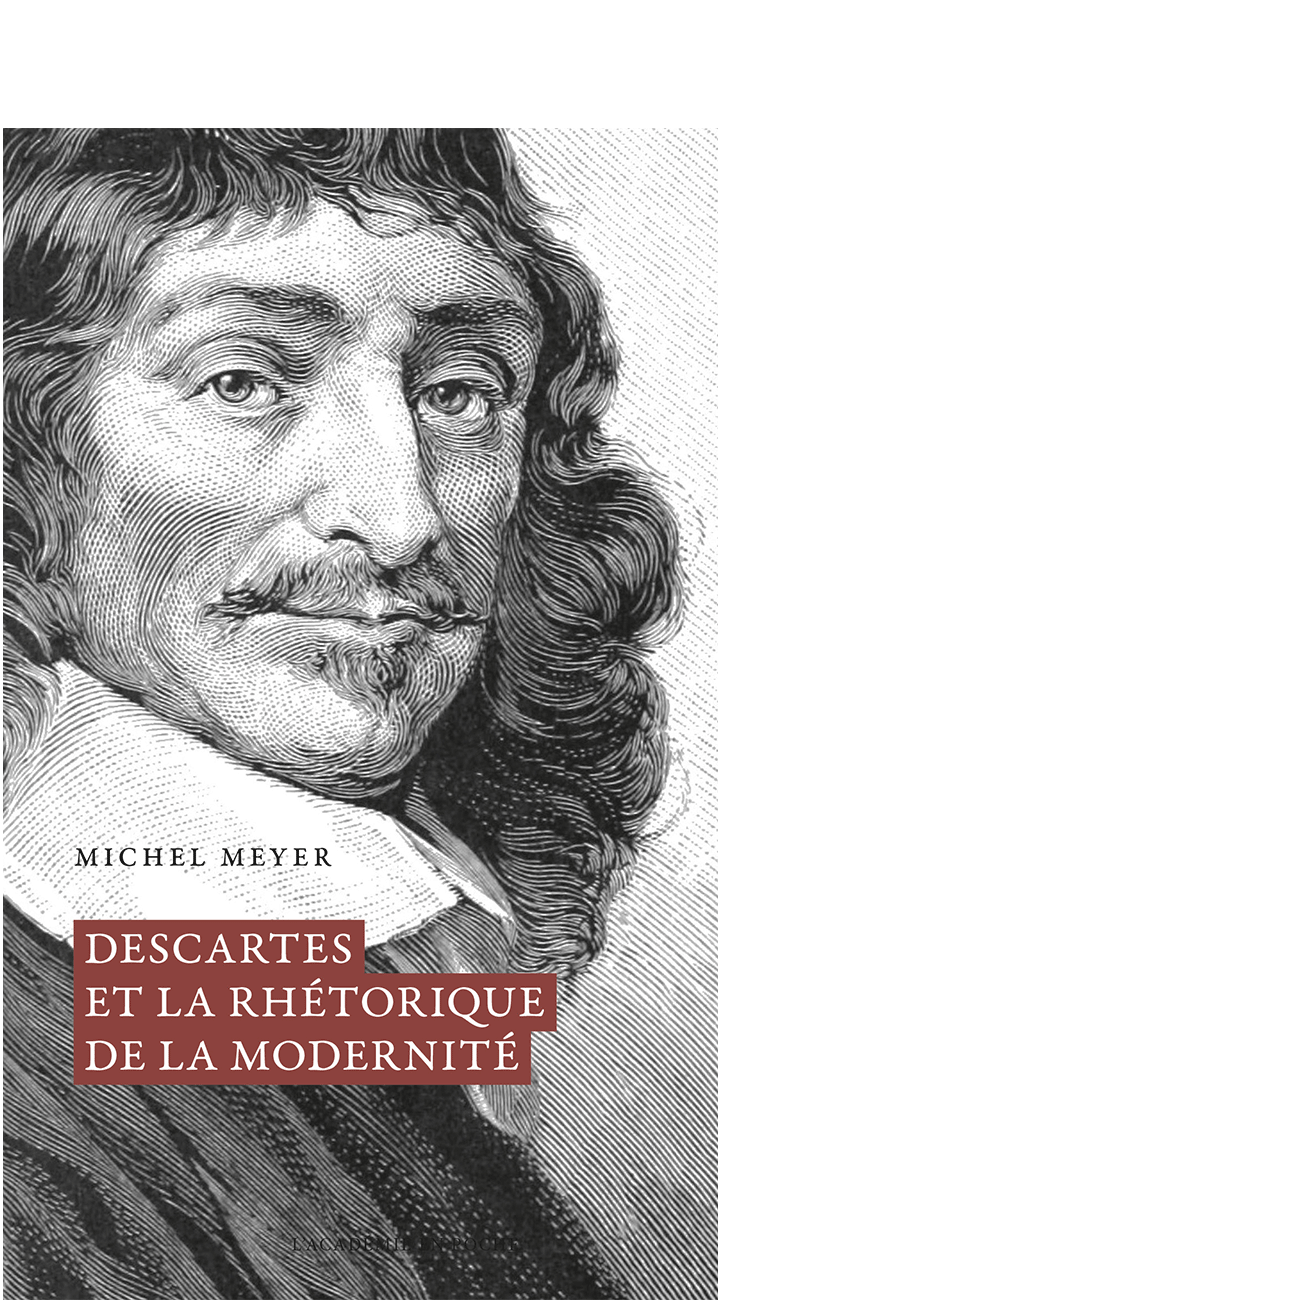 Descartes et la rhétorique de la modernité